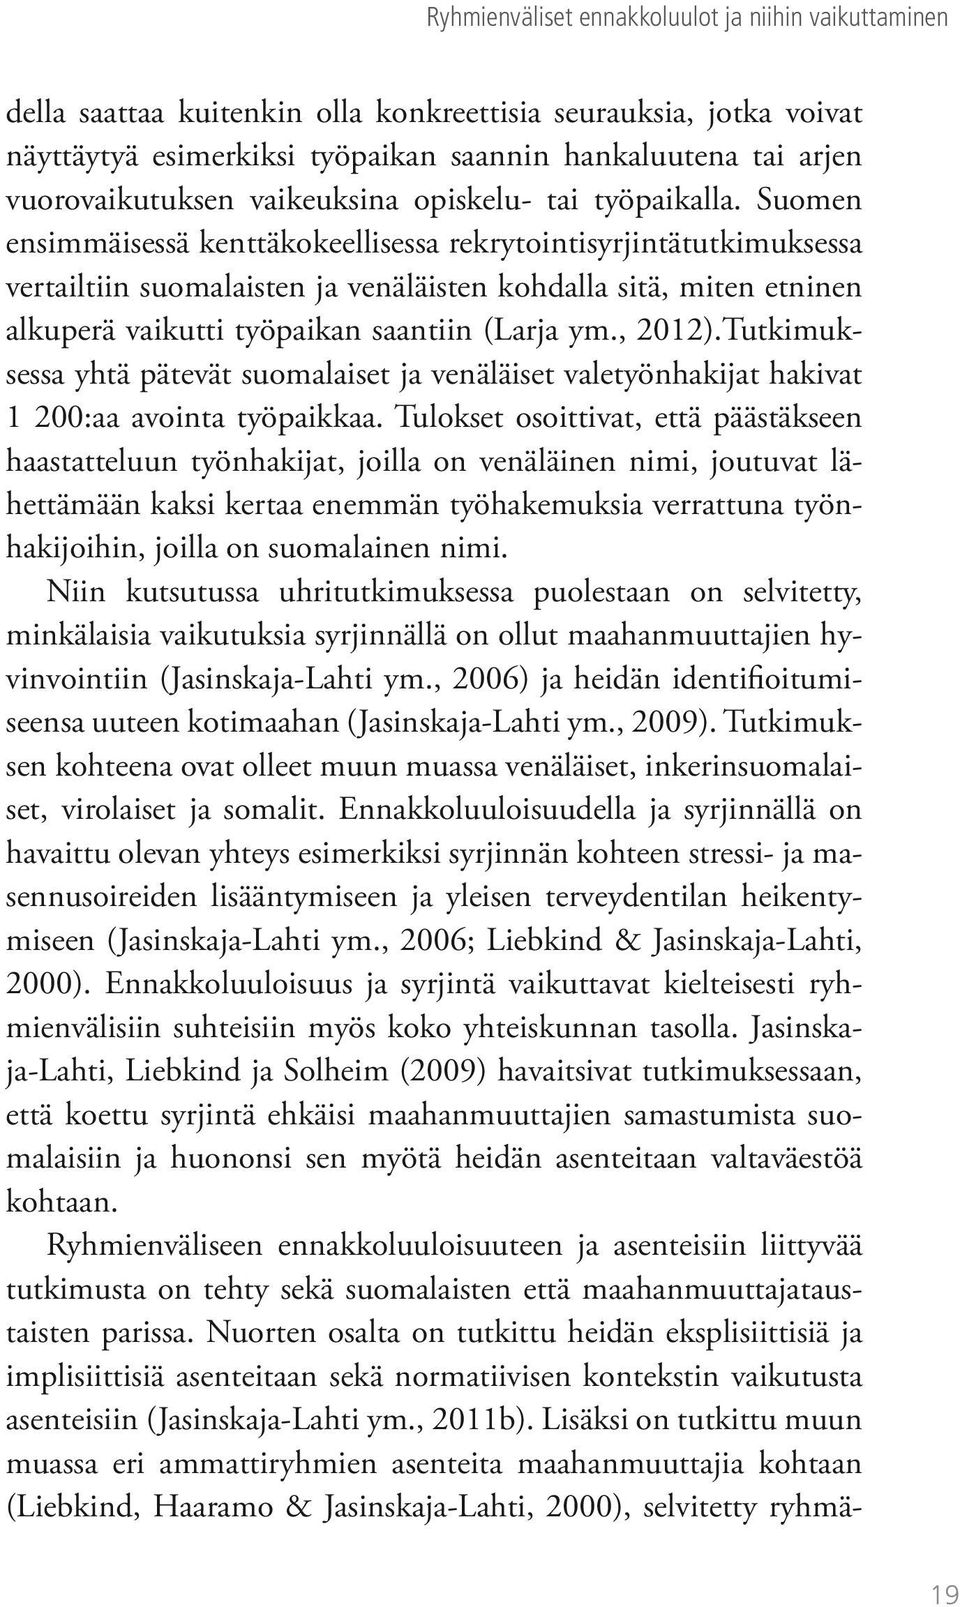 Suomen ensimmäisessä kenttäkokeellisessa rekrytointisyrjintätutkimuksessa vertailtiin suomalaisten ja venäläisten kohdalla sitä, miten etninen alkuperä vaikutti työpaikan saantiin (Larja ym., 2012).